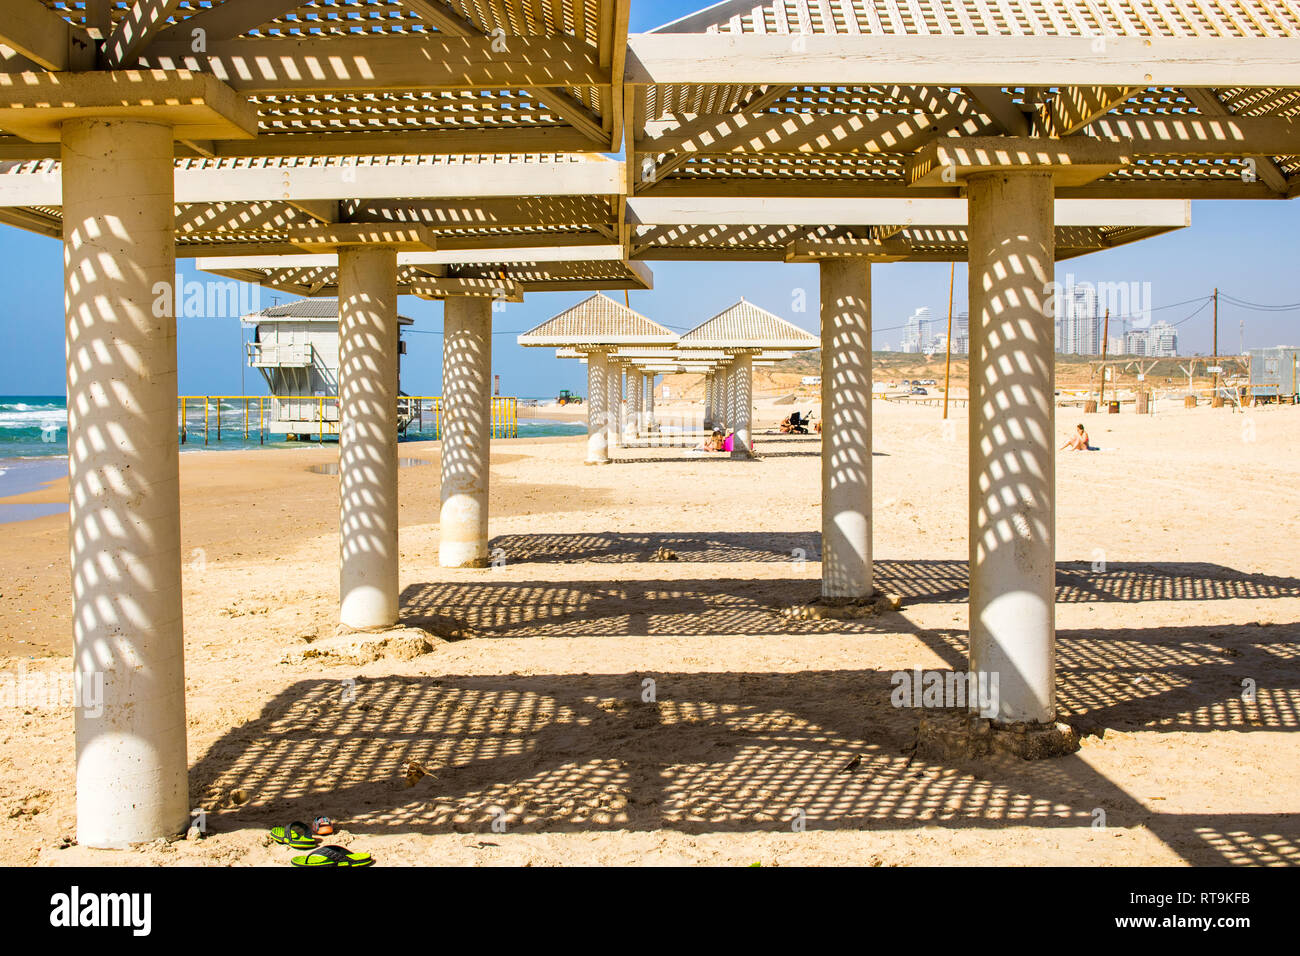 Strand von Tel Aviv, Israel. Sonniges Wetter mit strahlend blauem Himmel  und schönen Schatten form Stein Strand Sonnenschirme Stockfotografie - Alamy